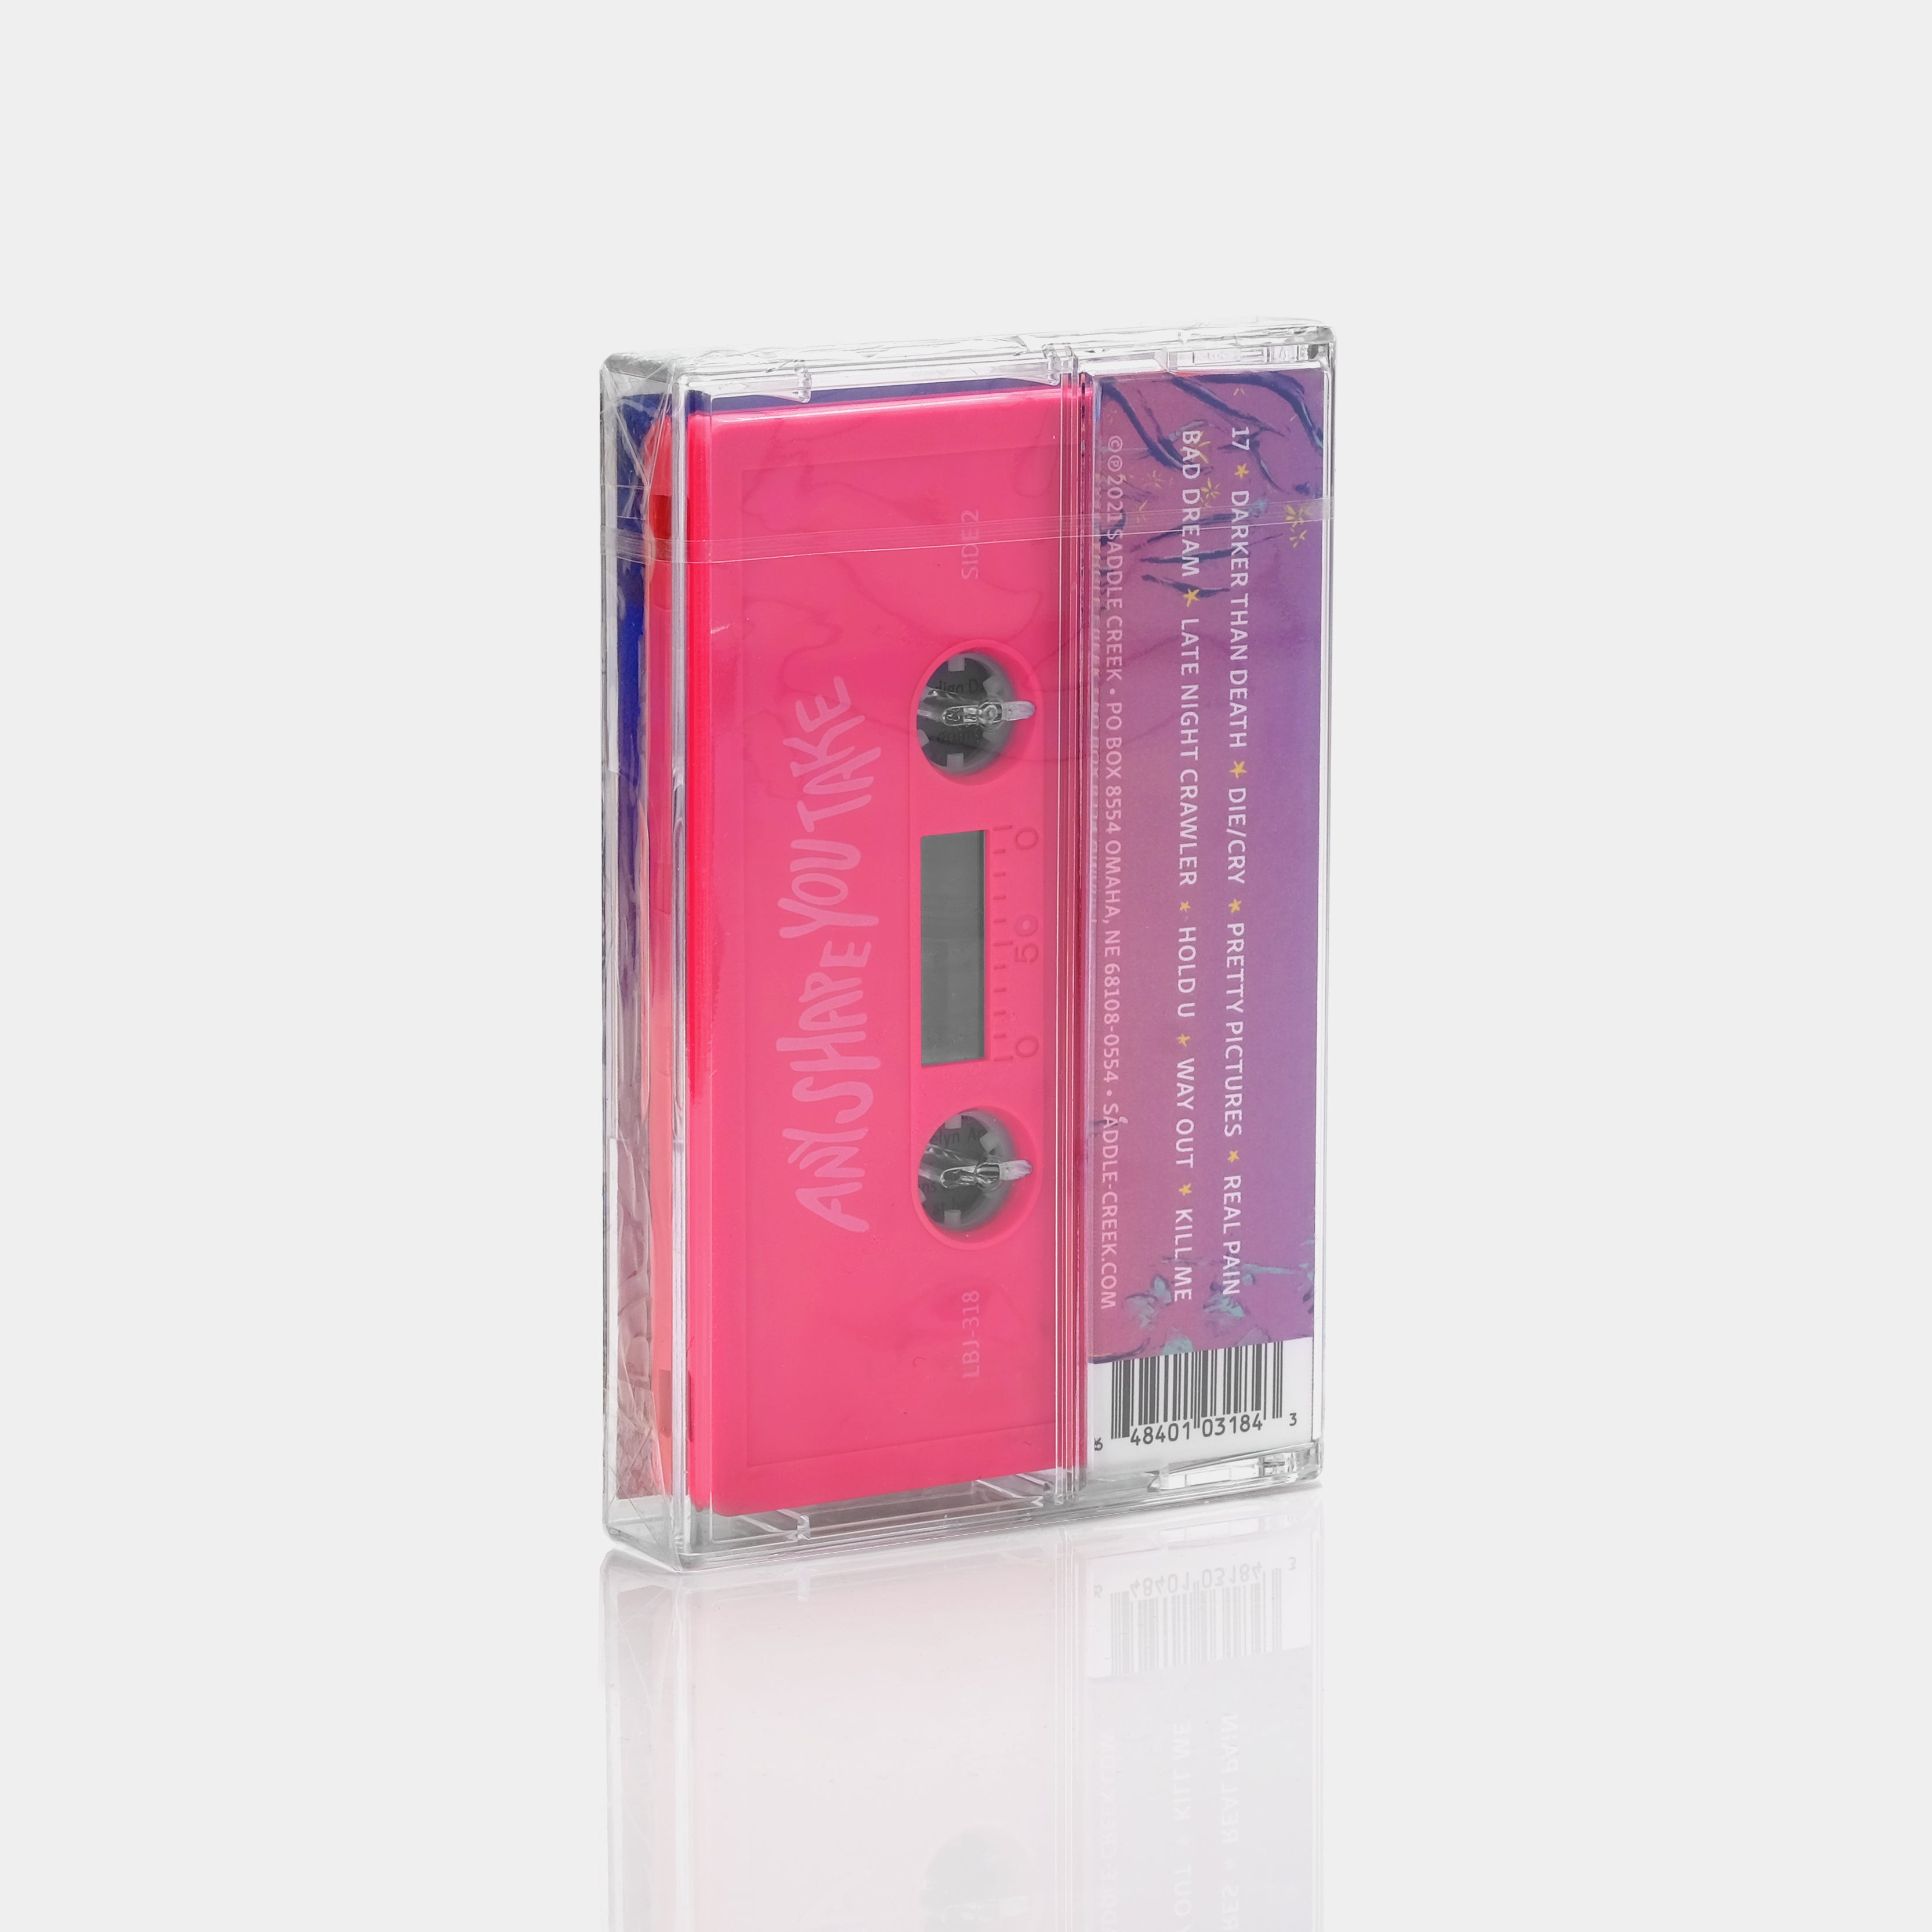 Indigo De Souza - Any Shape You Take Cassette Tape